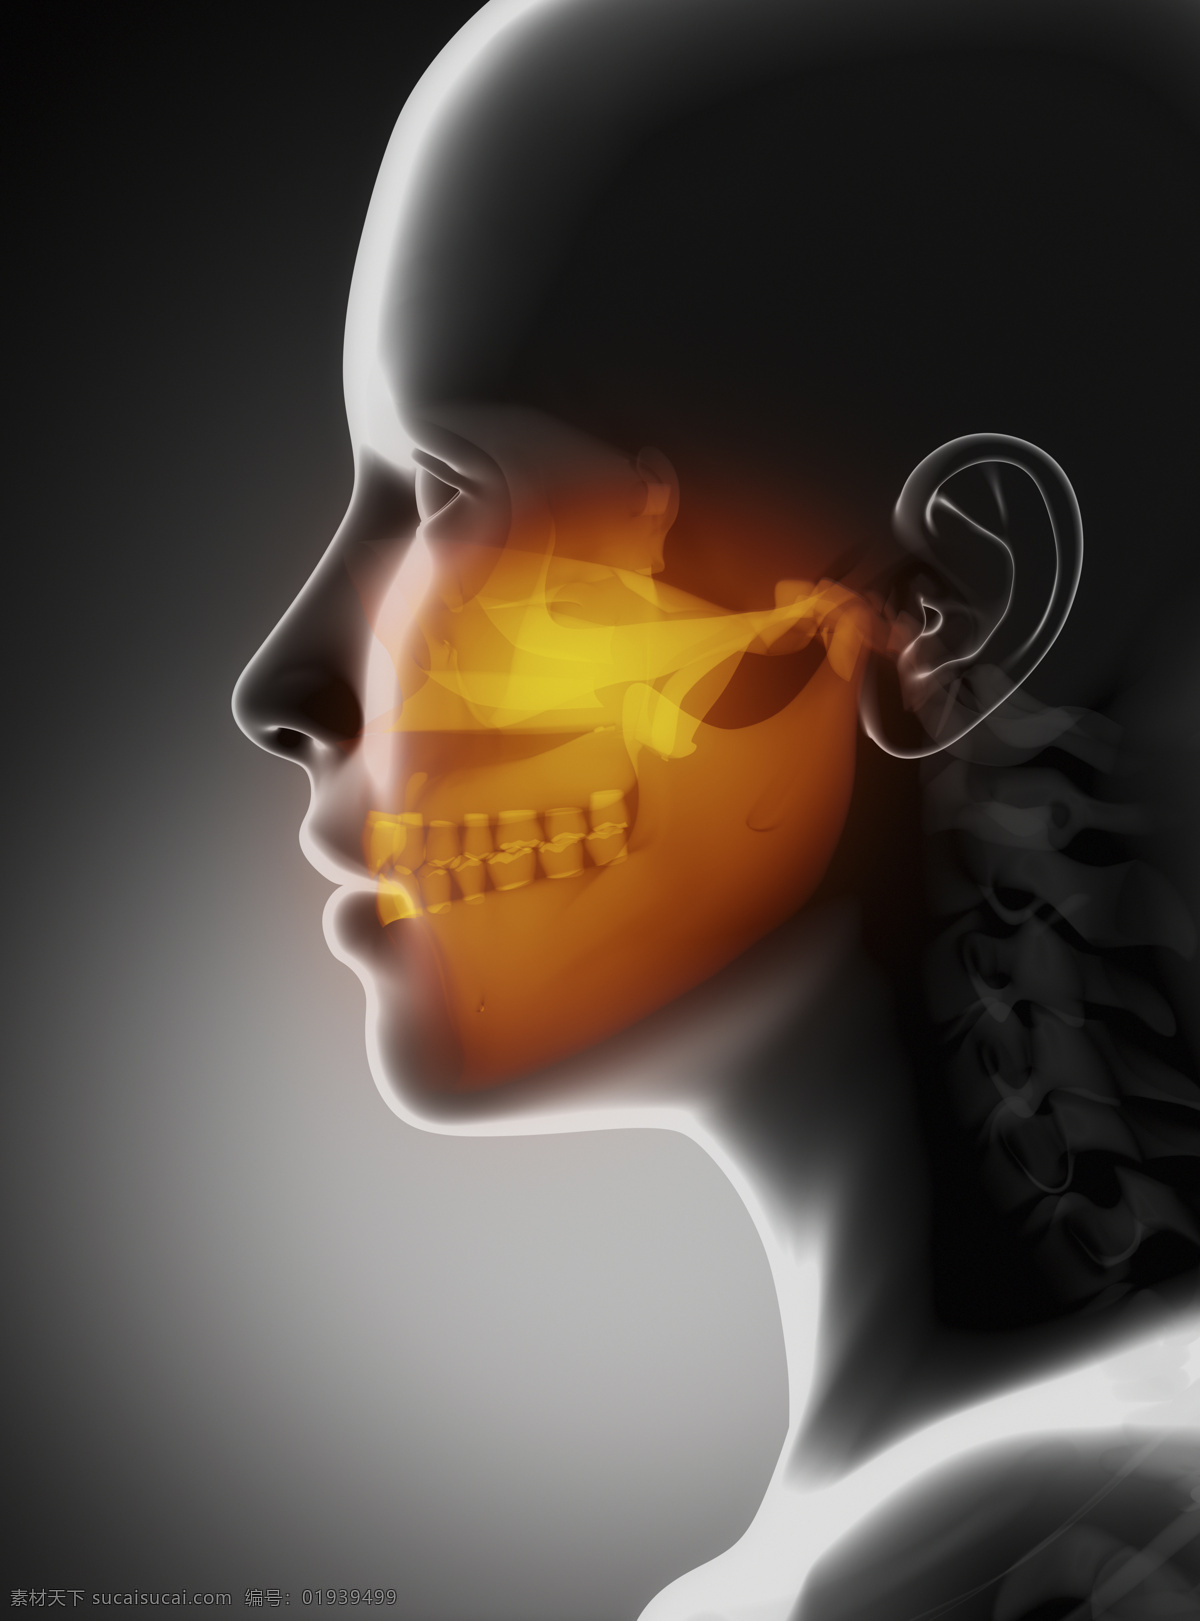 人体 头骨 ct 人体头骨 男性人体器官 医疗科学 医学 人体器官图 人物图片